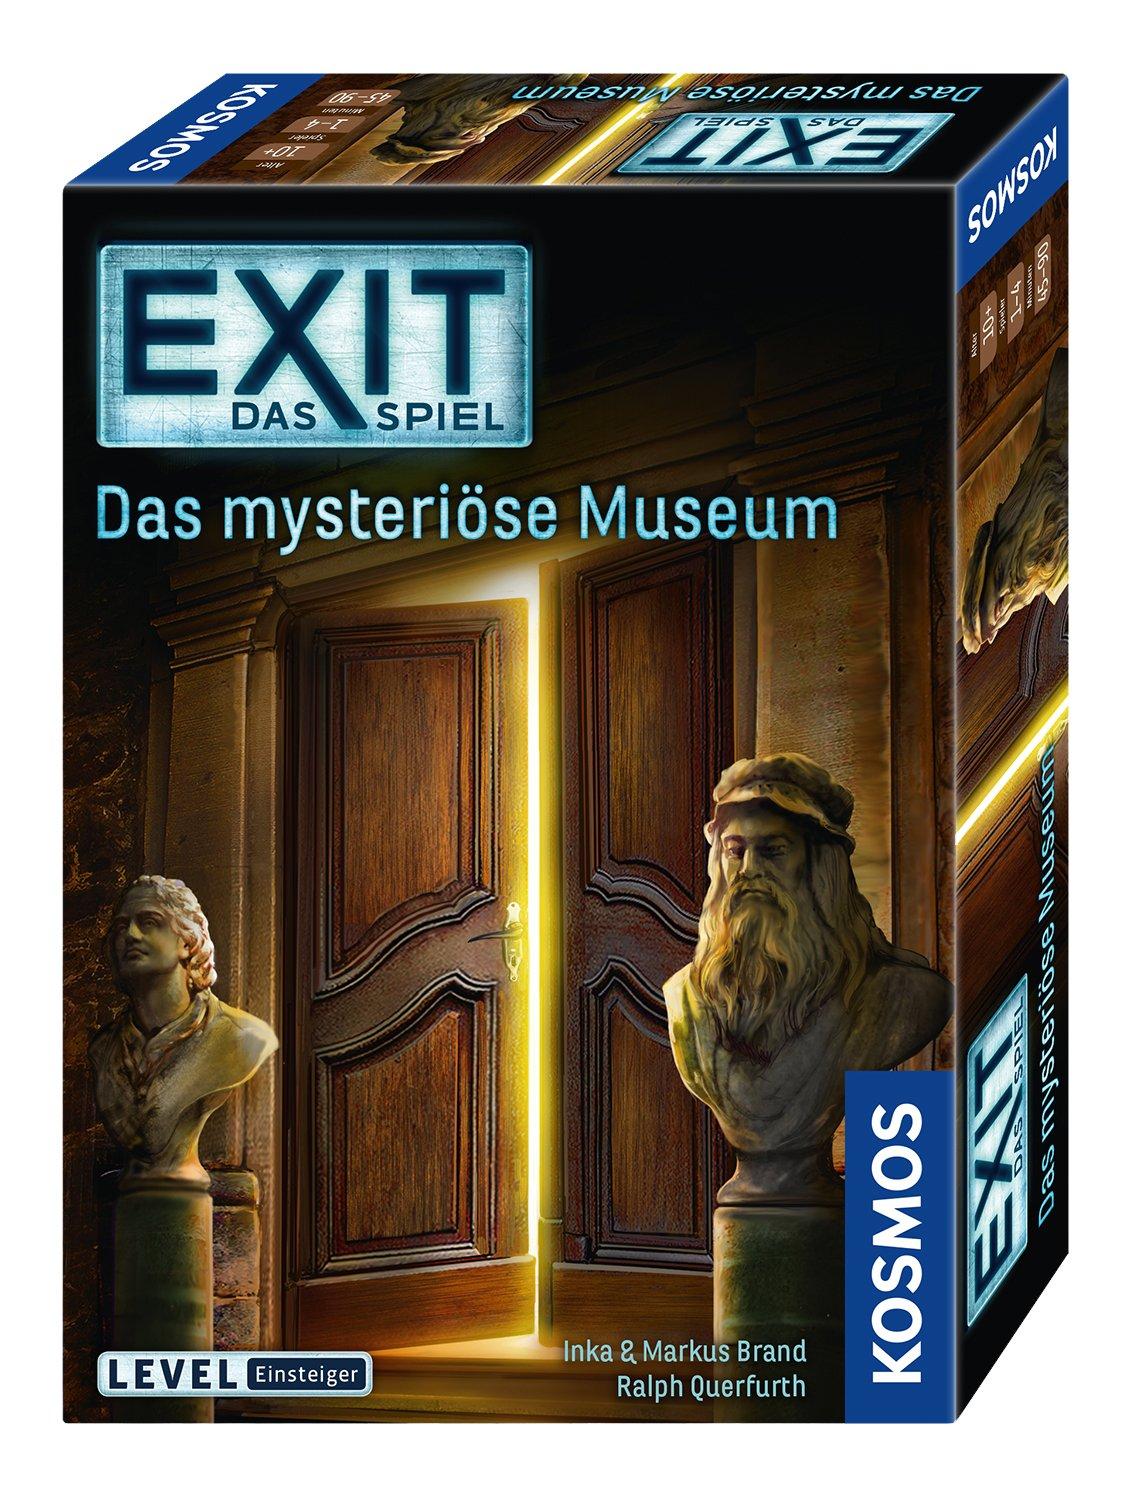 Kosmos  Exit - Das mysteriöse Museum, Tedesco 